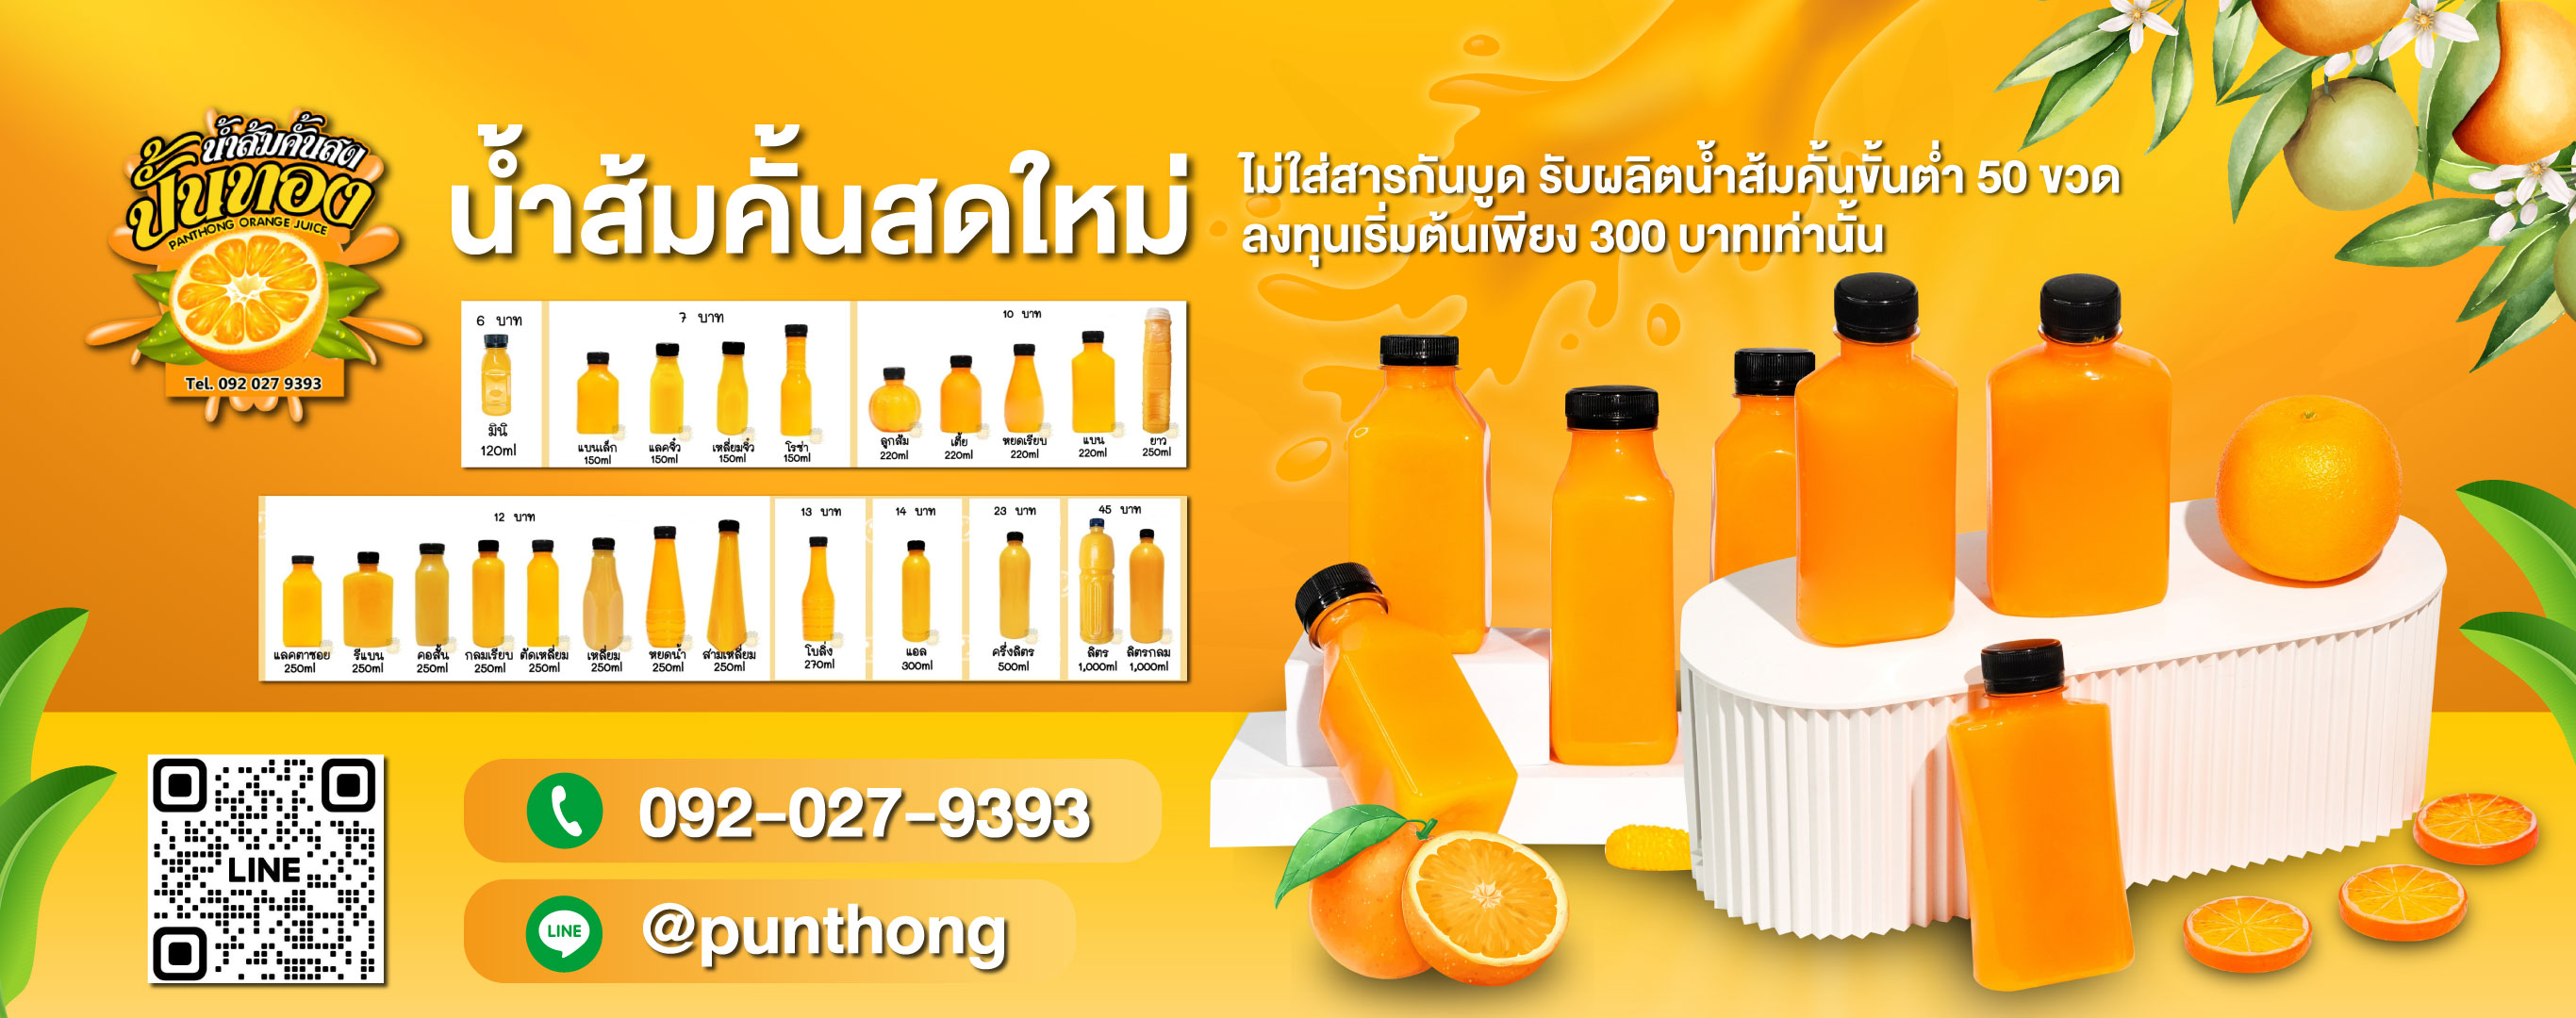 โรงงานน้ำส้มคั้นขายส่ง นนทบุรี